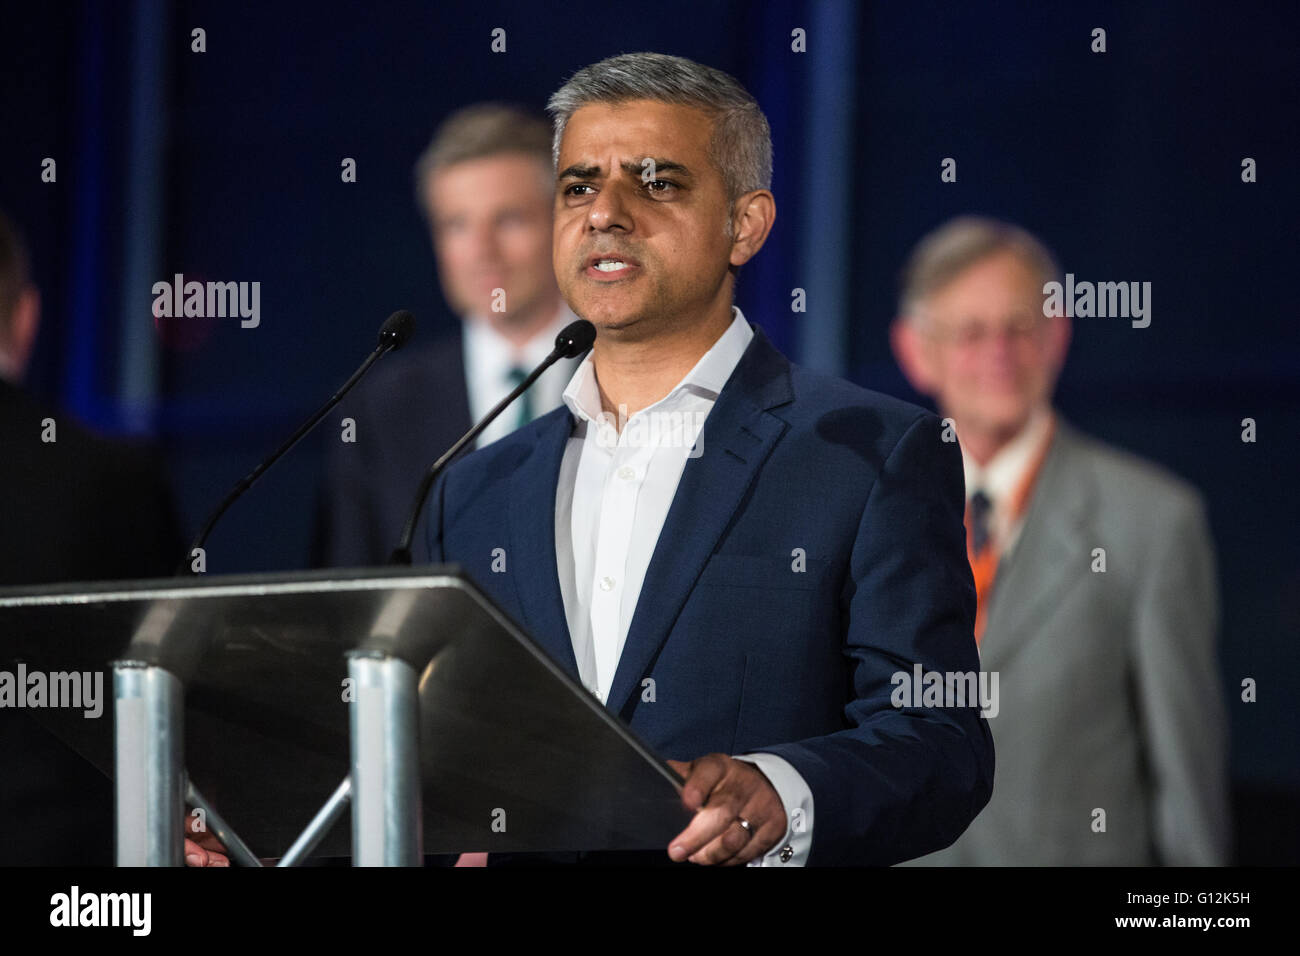 Londres, Reino Unido. 7 de mayo de 2016. Sadiq Khan hace su discurso de ganador en las elecciones a la alcaldía de Londres la siguiente declaración en el Ayuntamiento. Foto de stock